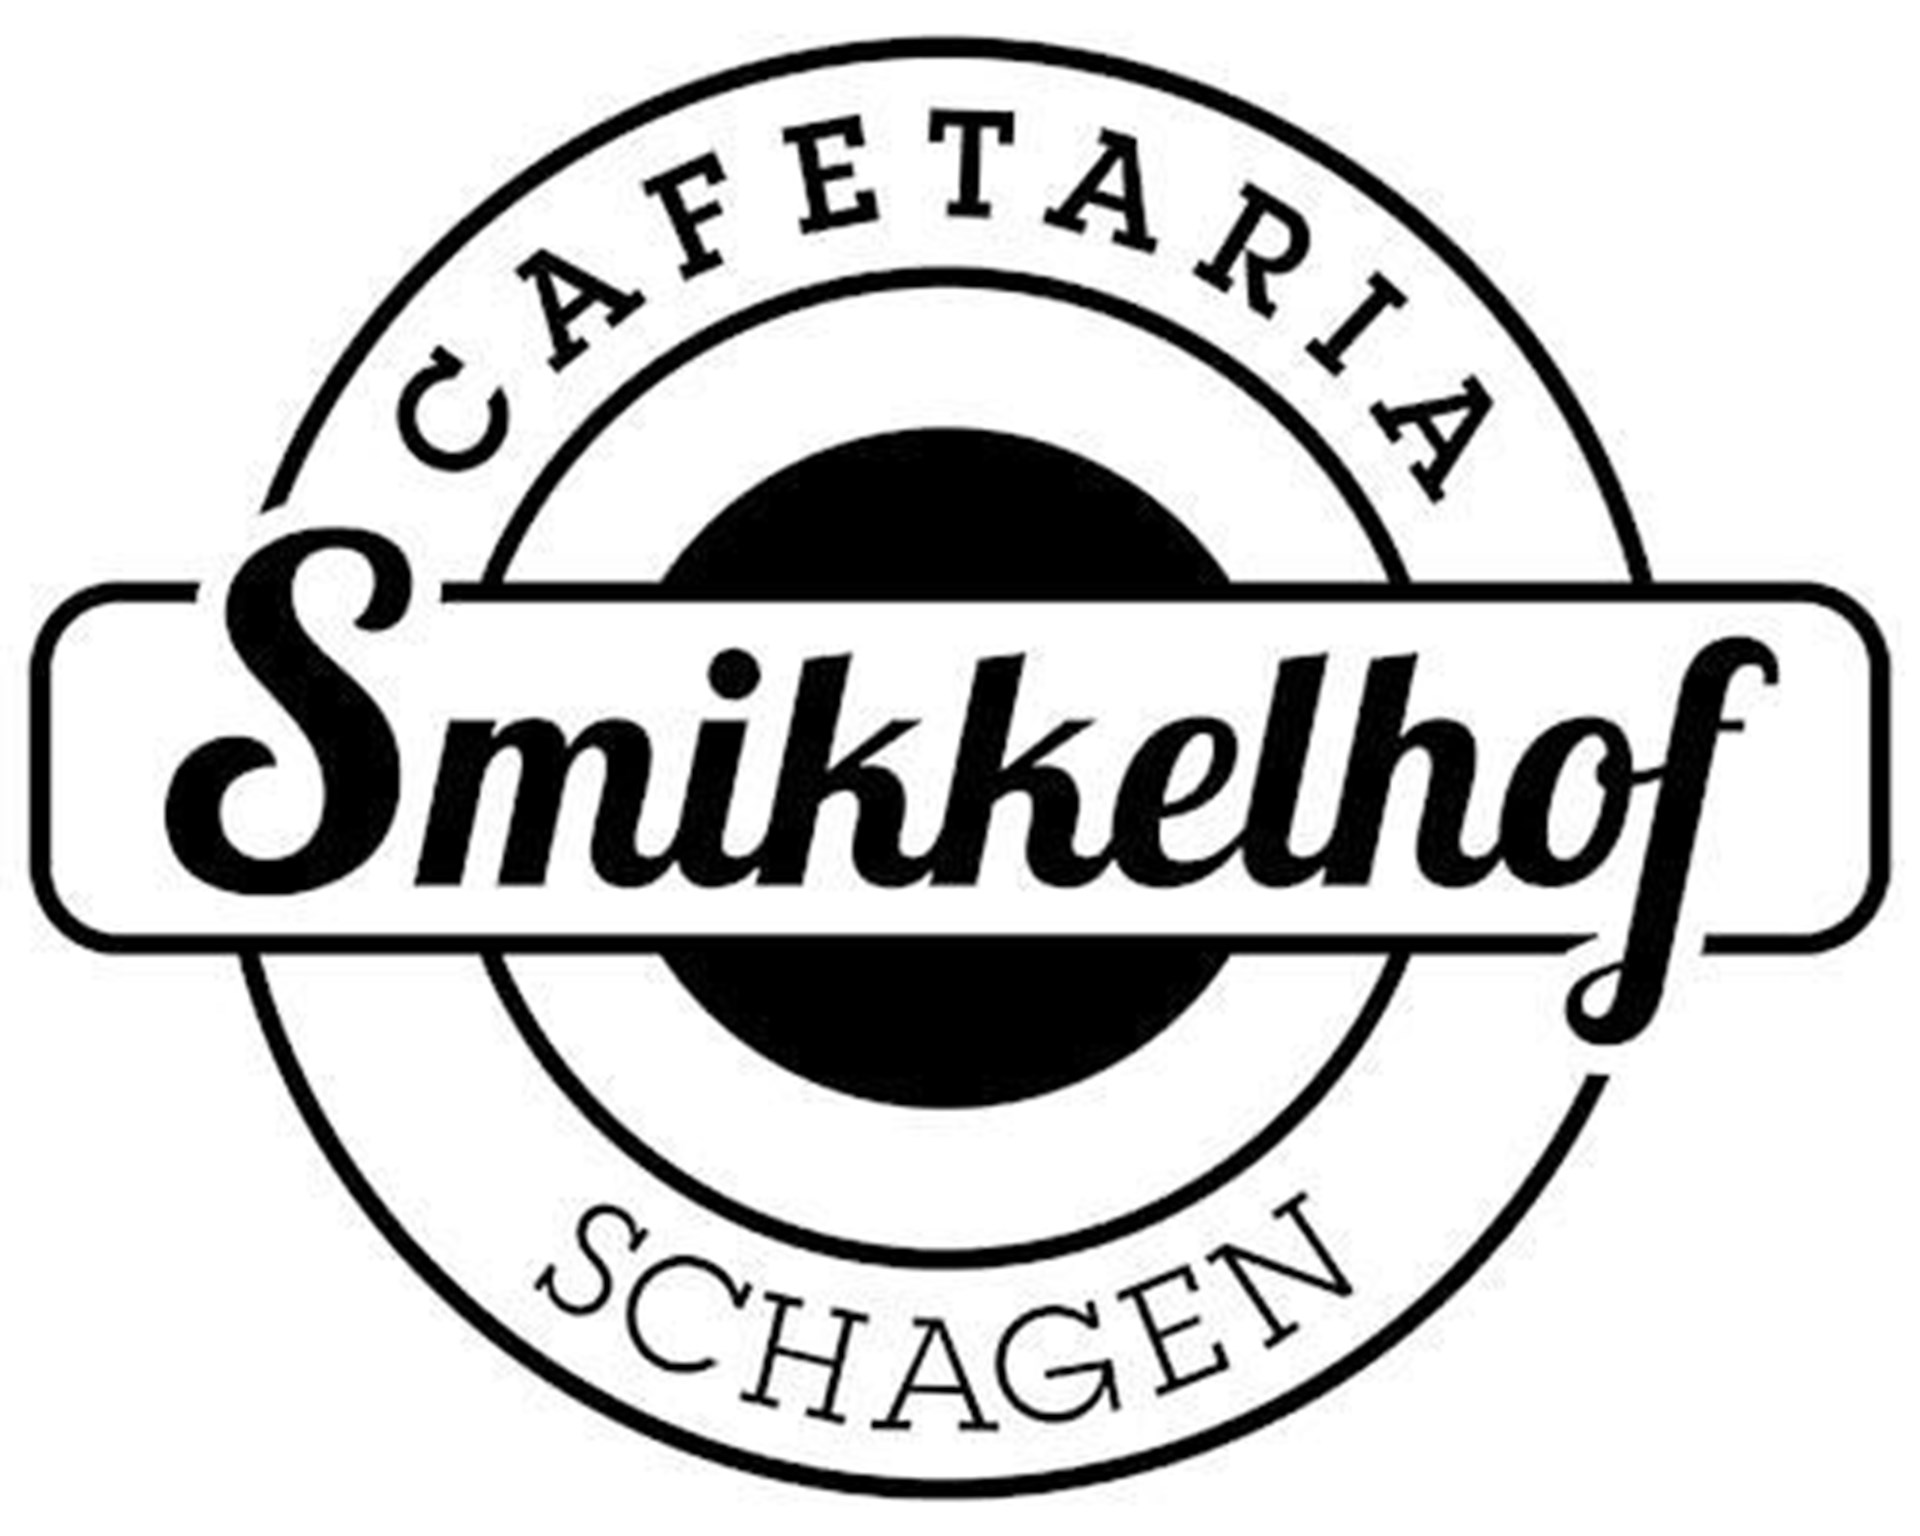 Cafetaria Smikkelhof Schagen banner